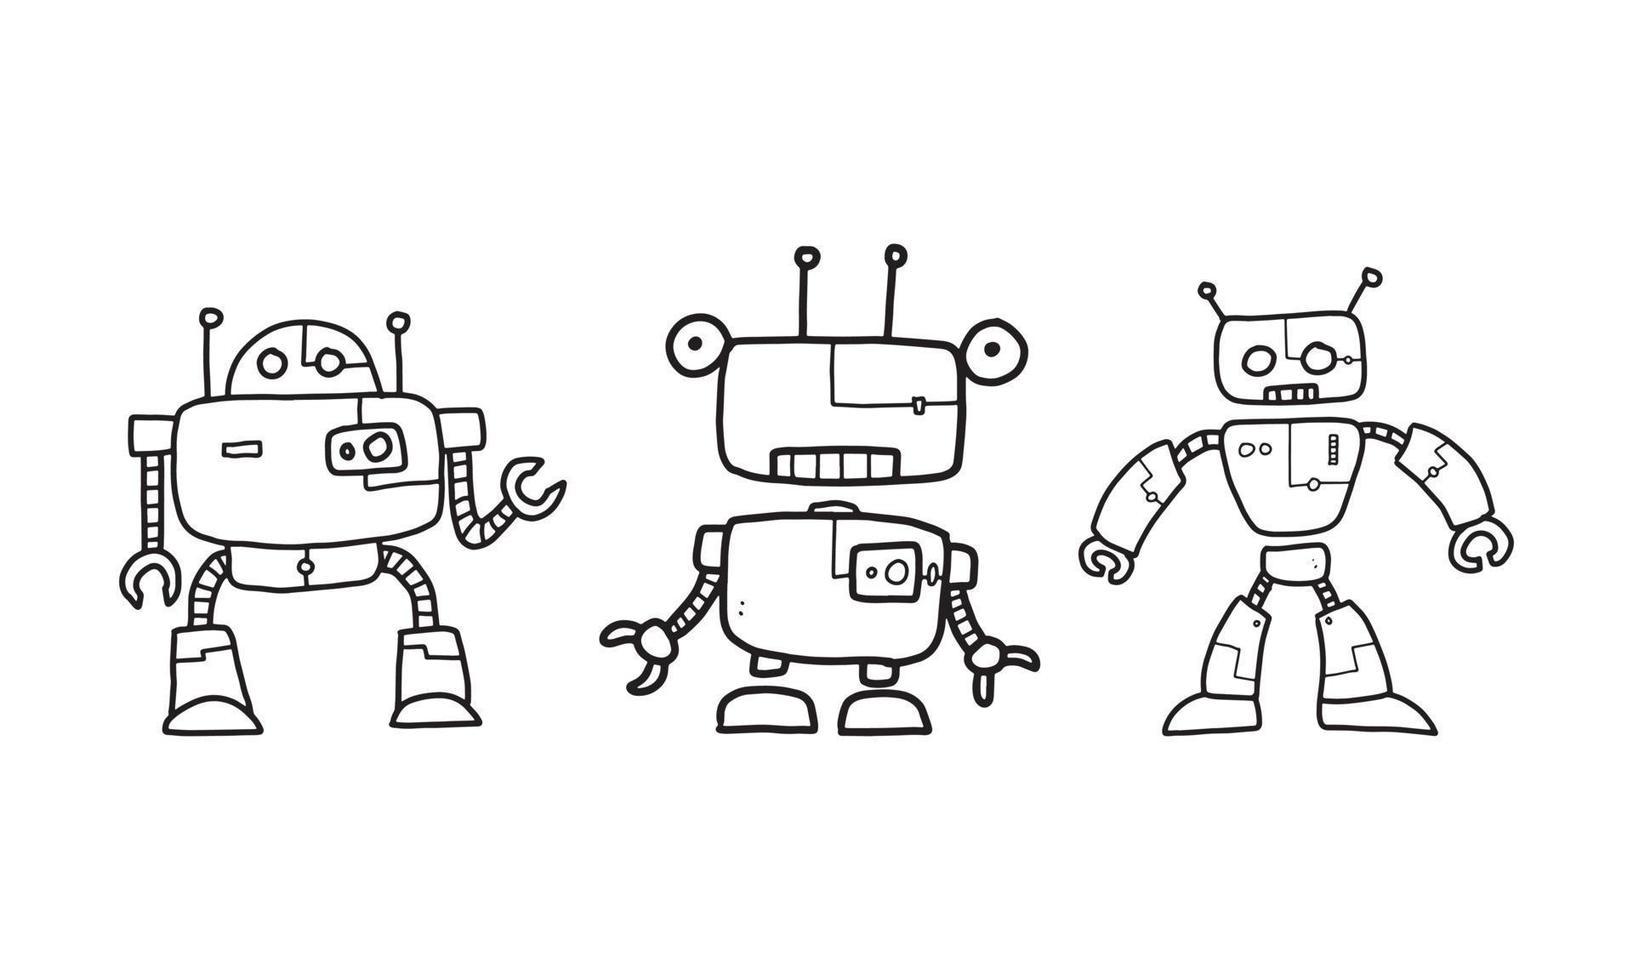 eine Vektorillustration des Roboters. Roboterskizzen auf weißem Hintergrund mit verschiedenen Typen. ein Satz ungefärbter Doodle-Roboter. vektor